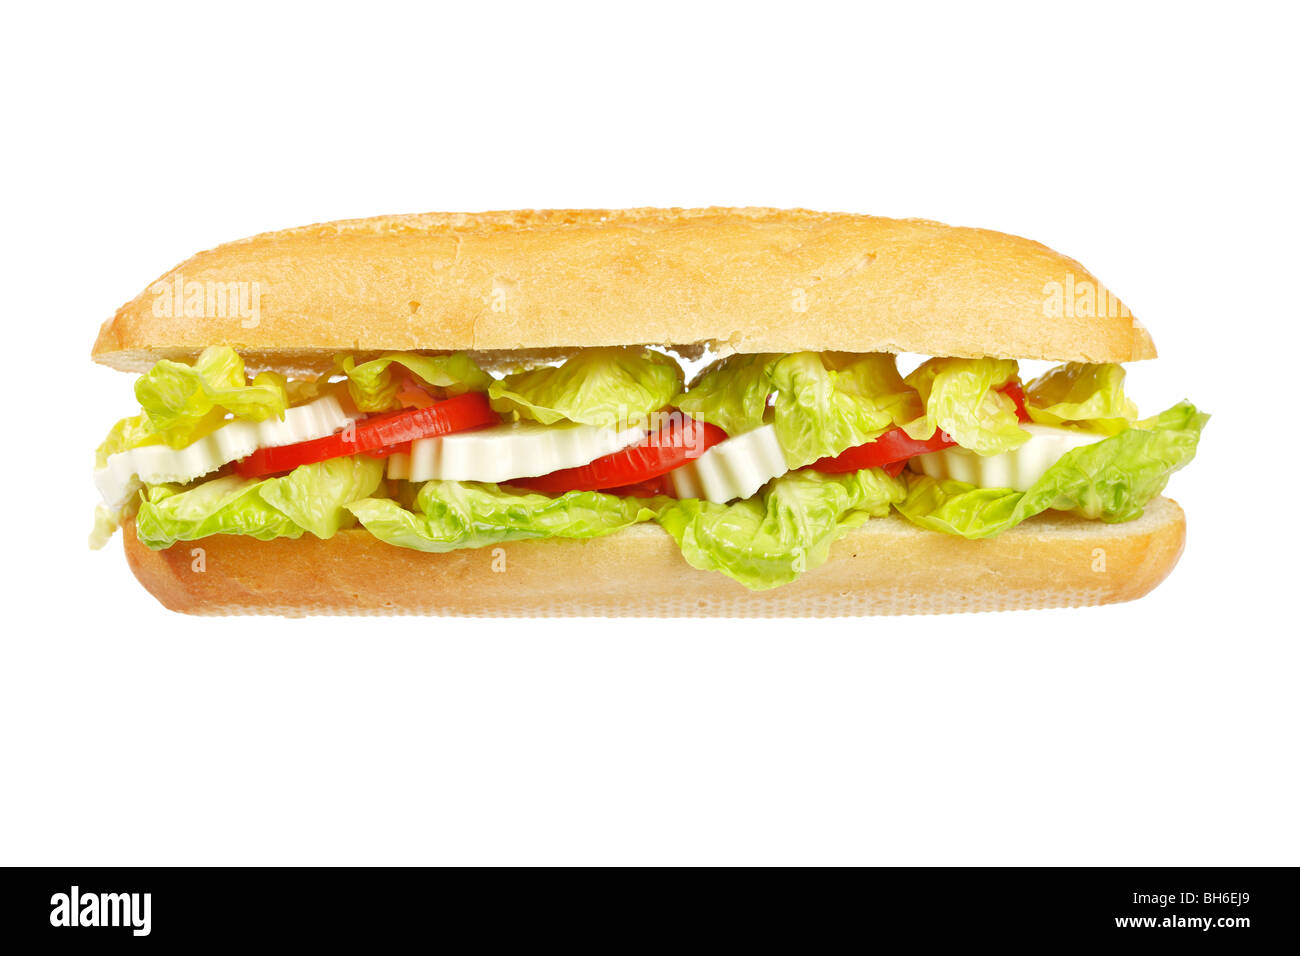 Un sandwich baguette avec laitue, tomates et fromage. Profondeur de champ Banque D'Images